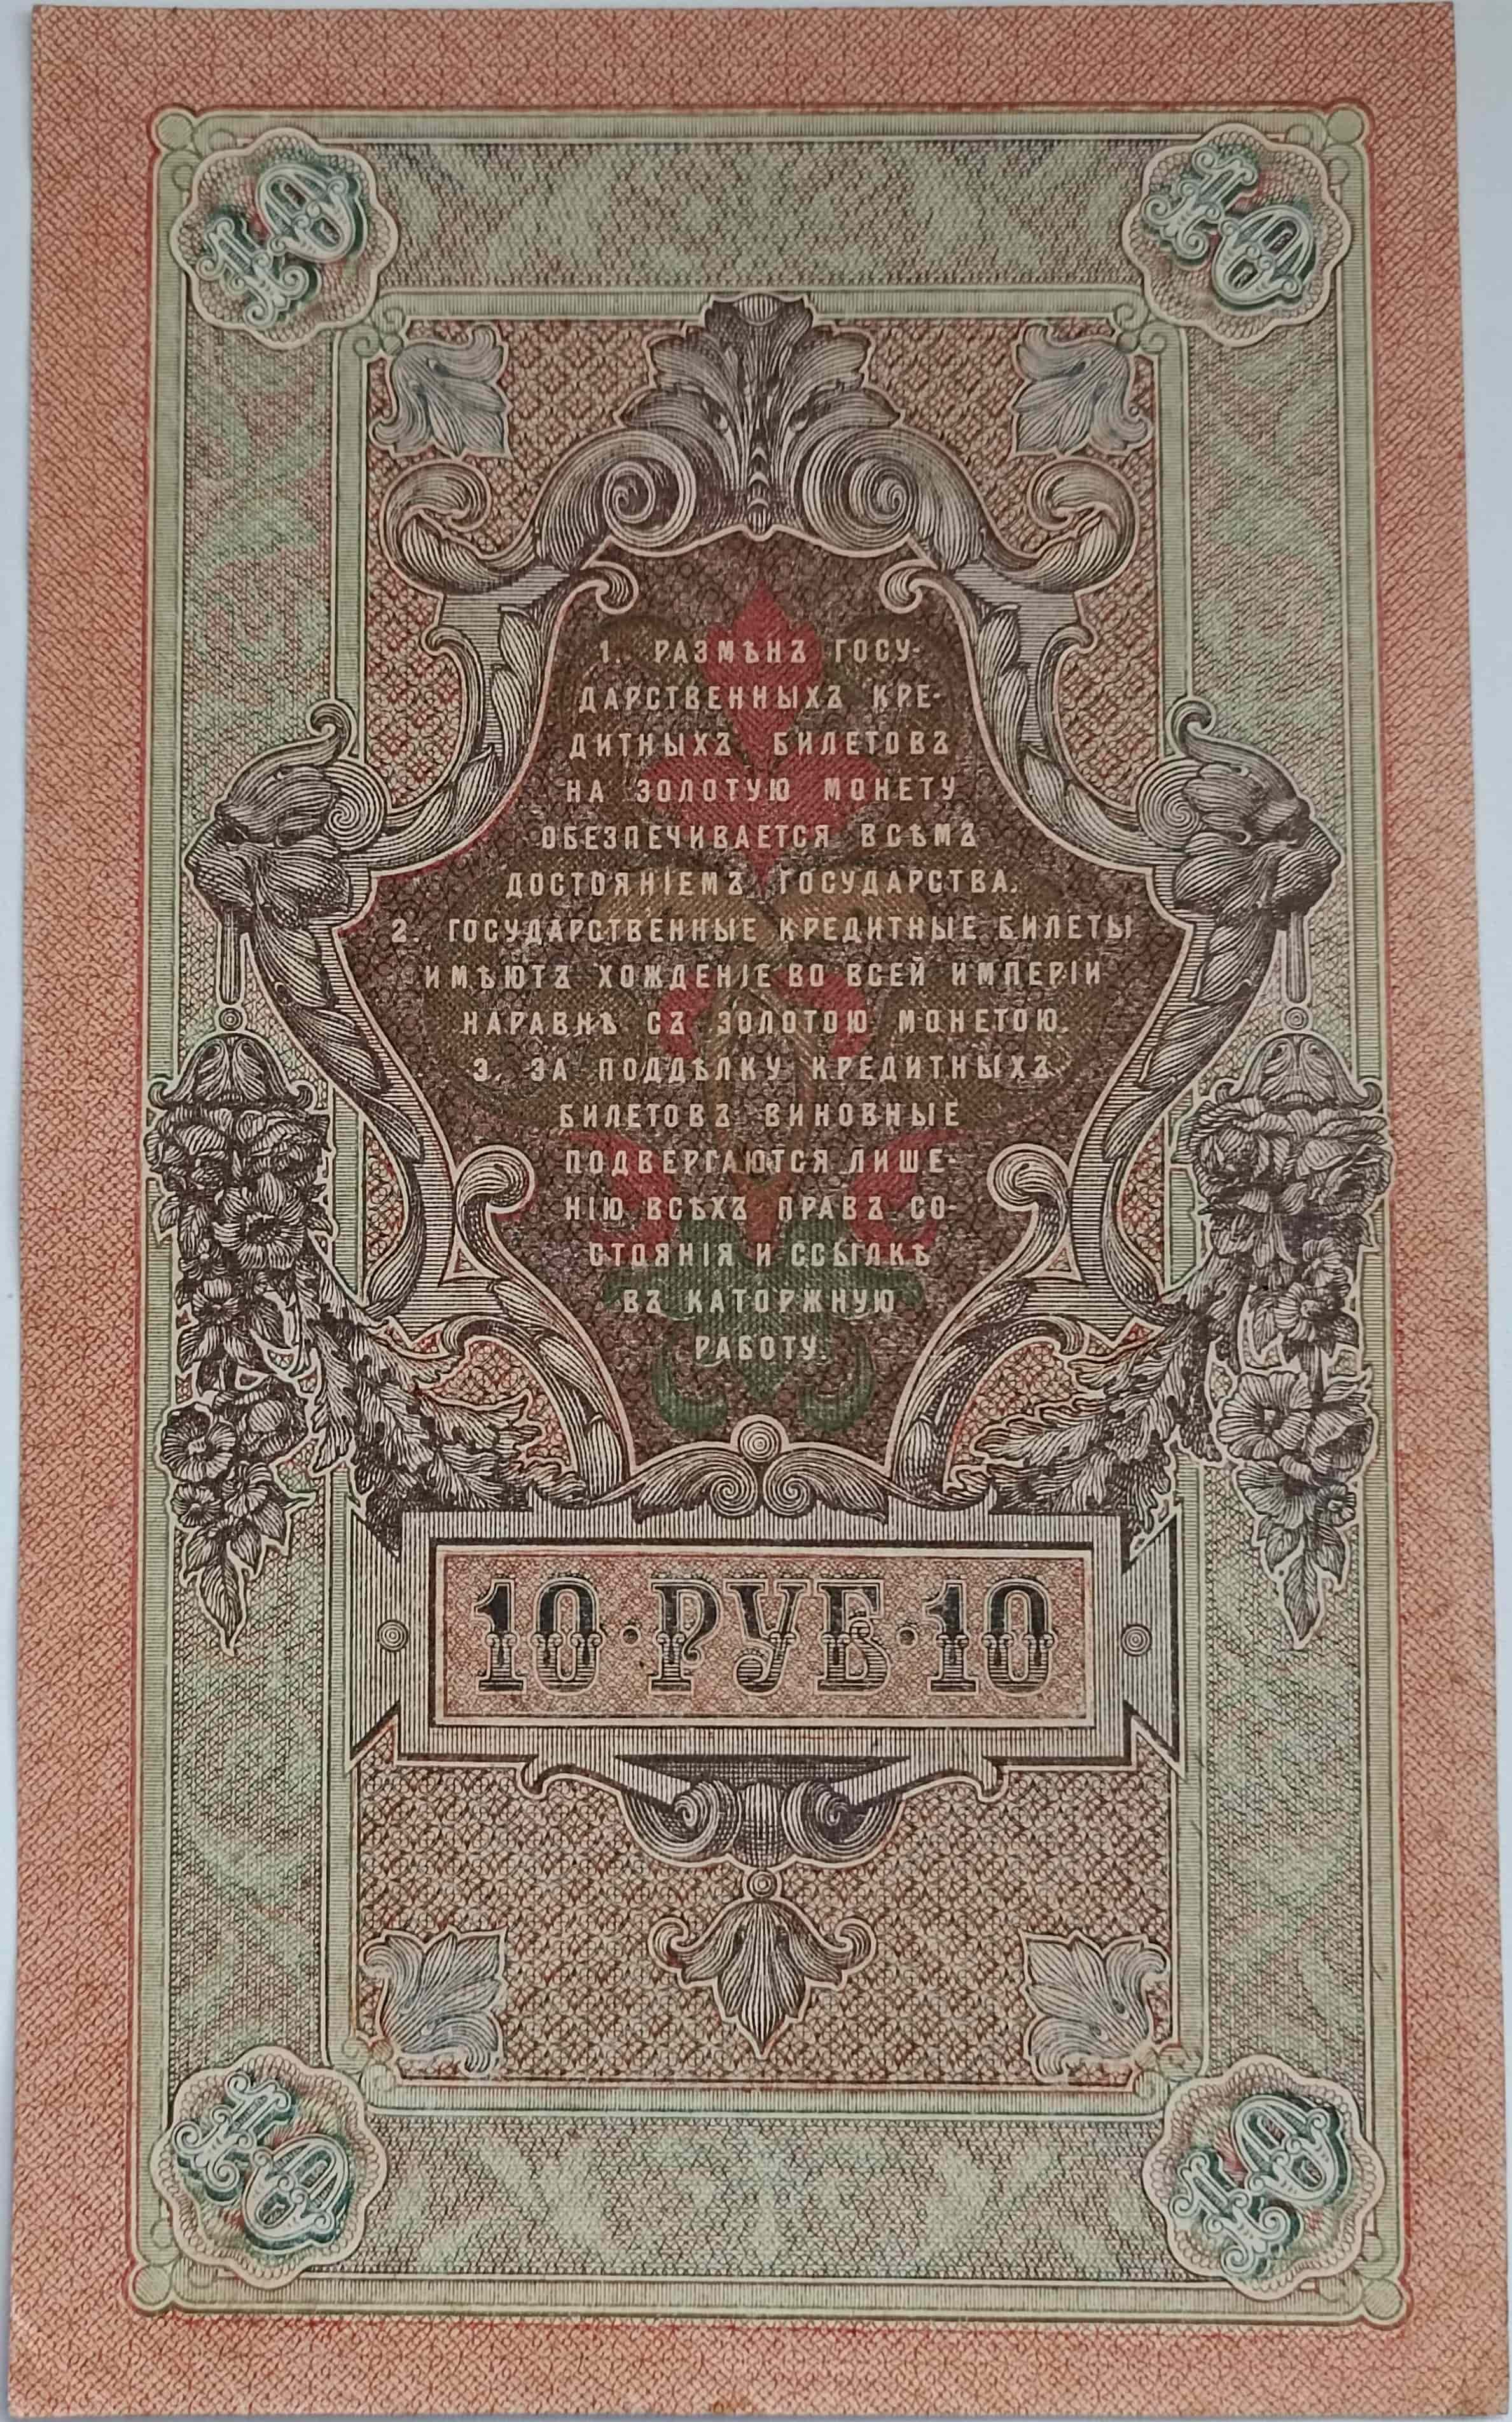 10 rubľov 1909